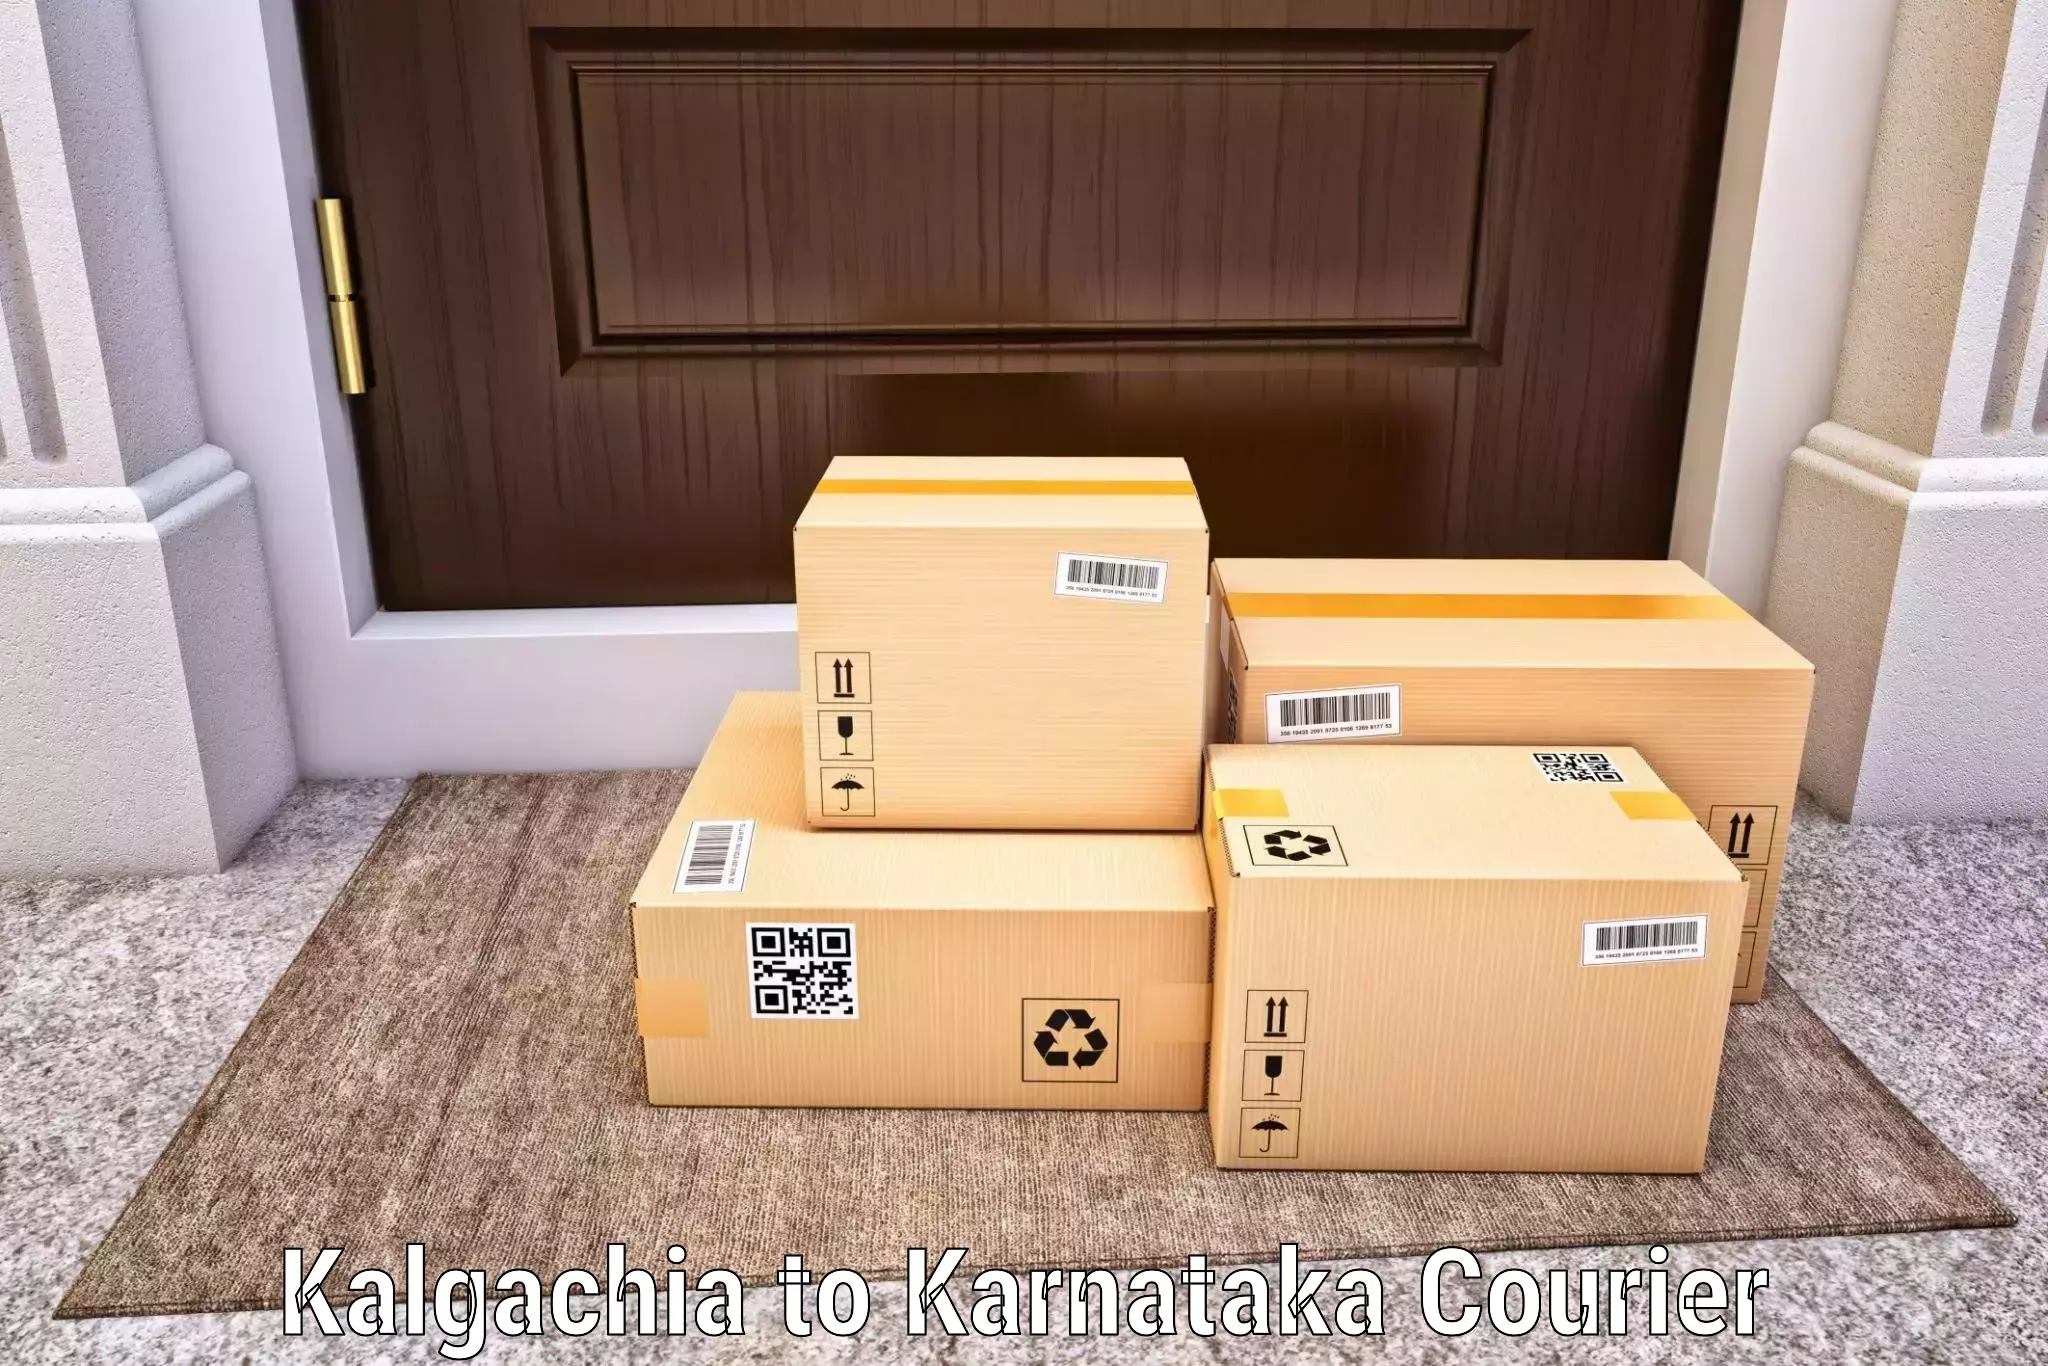 Cost-effective courier solutions Kalgachia to Yelburga